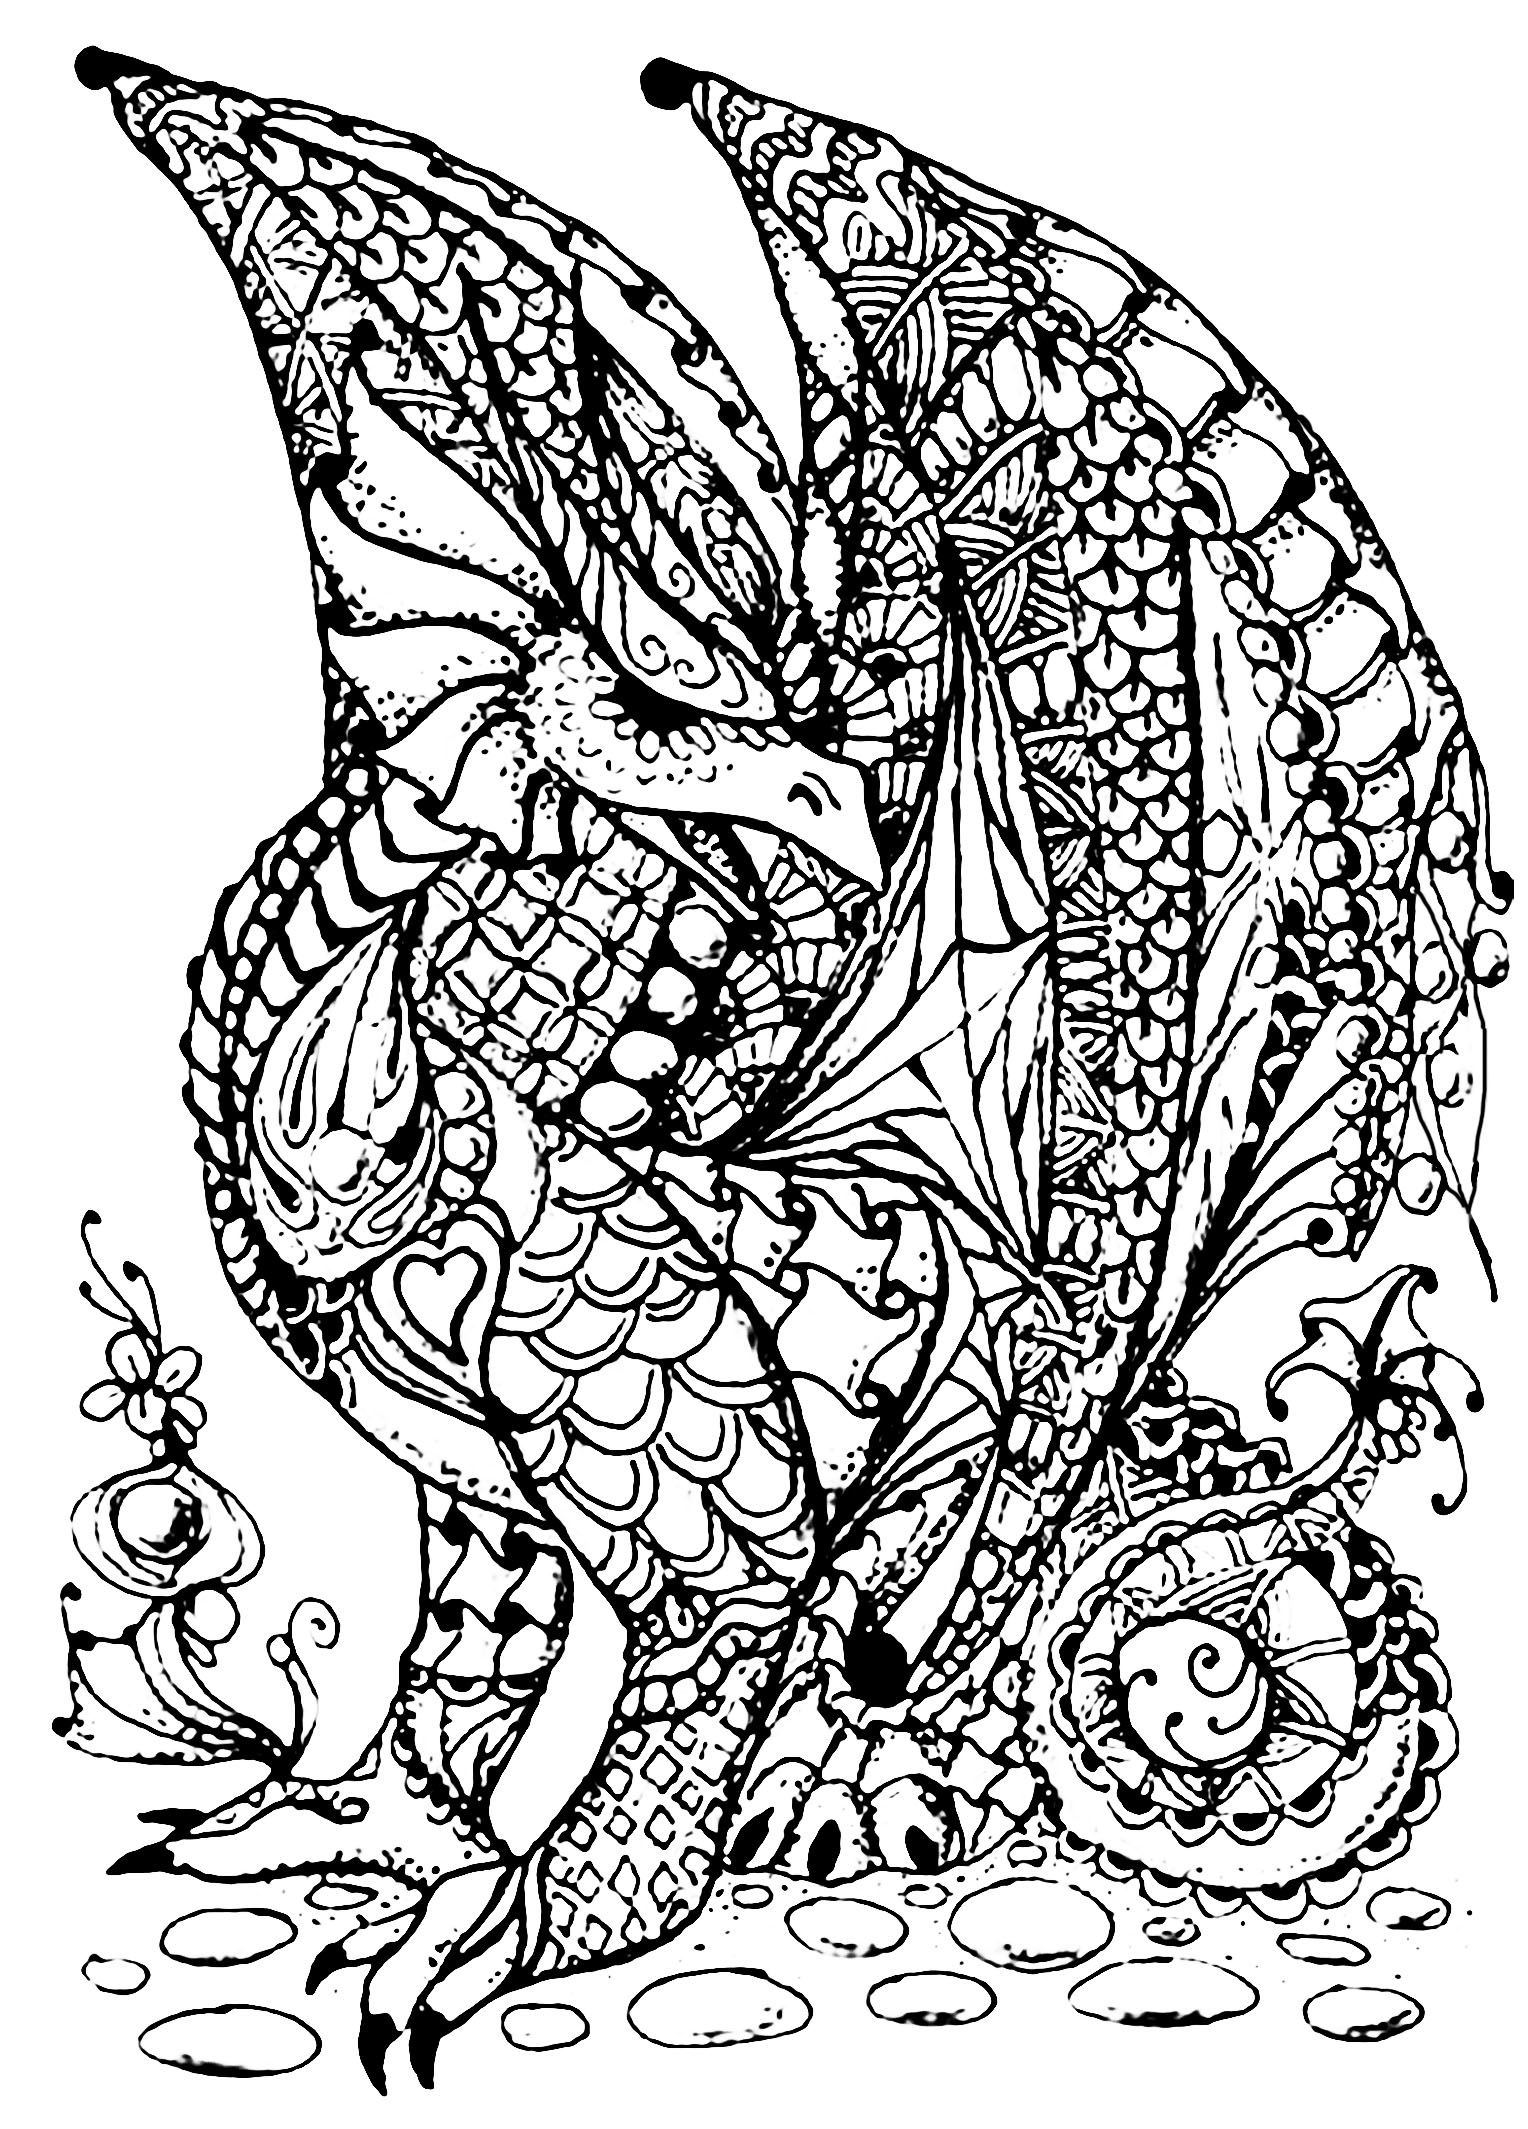 Colorear para adultos : Dragones - 12